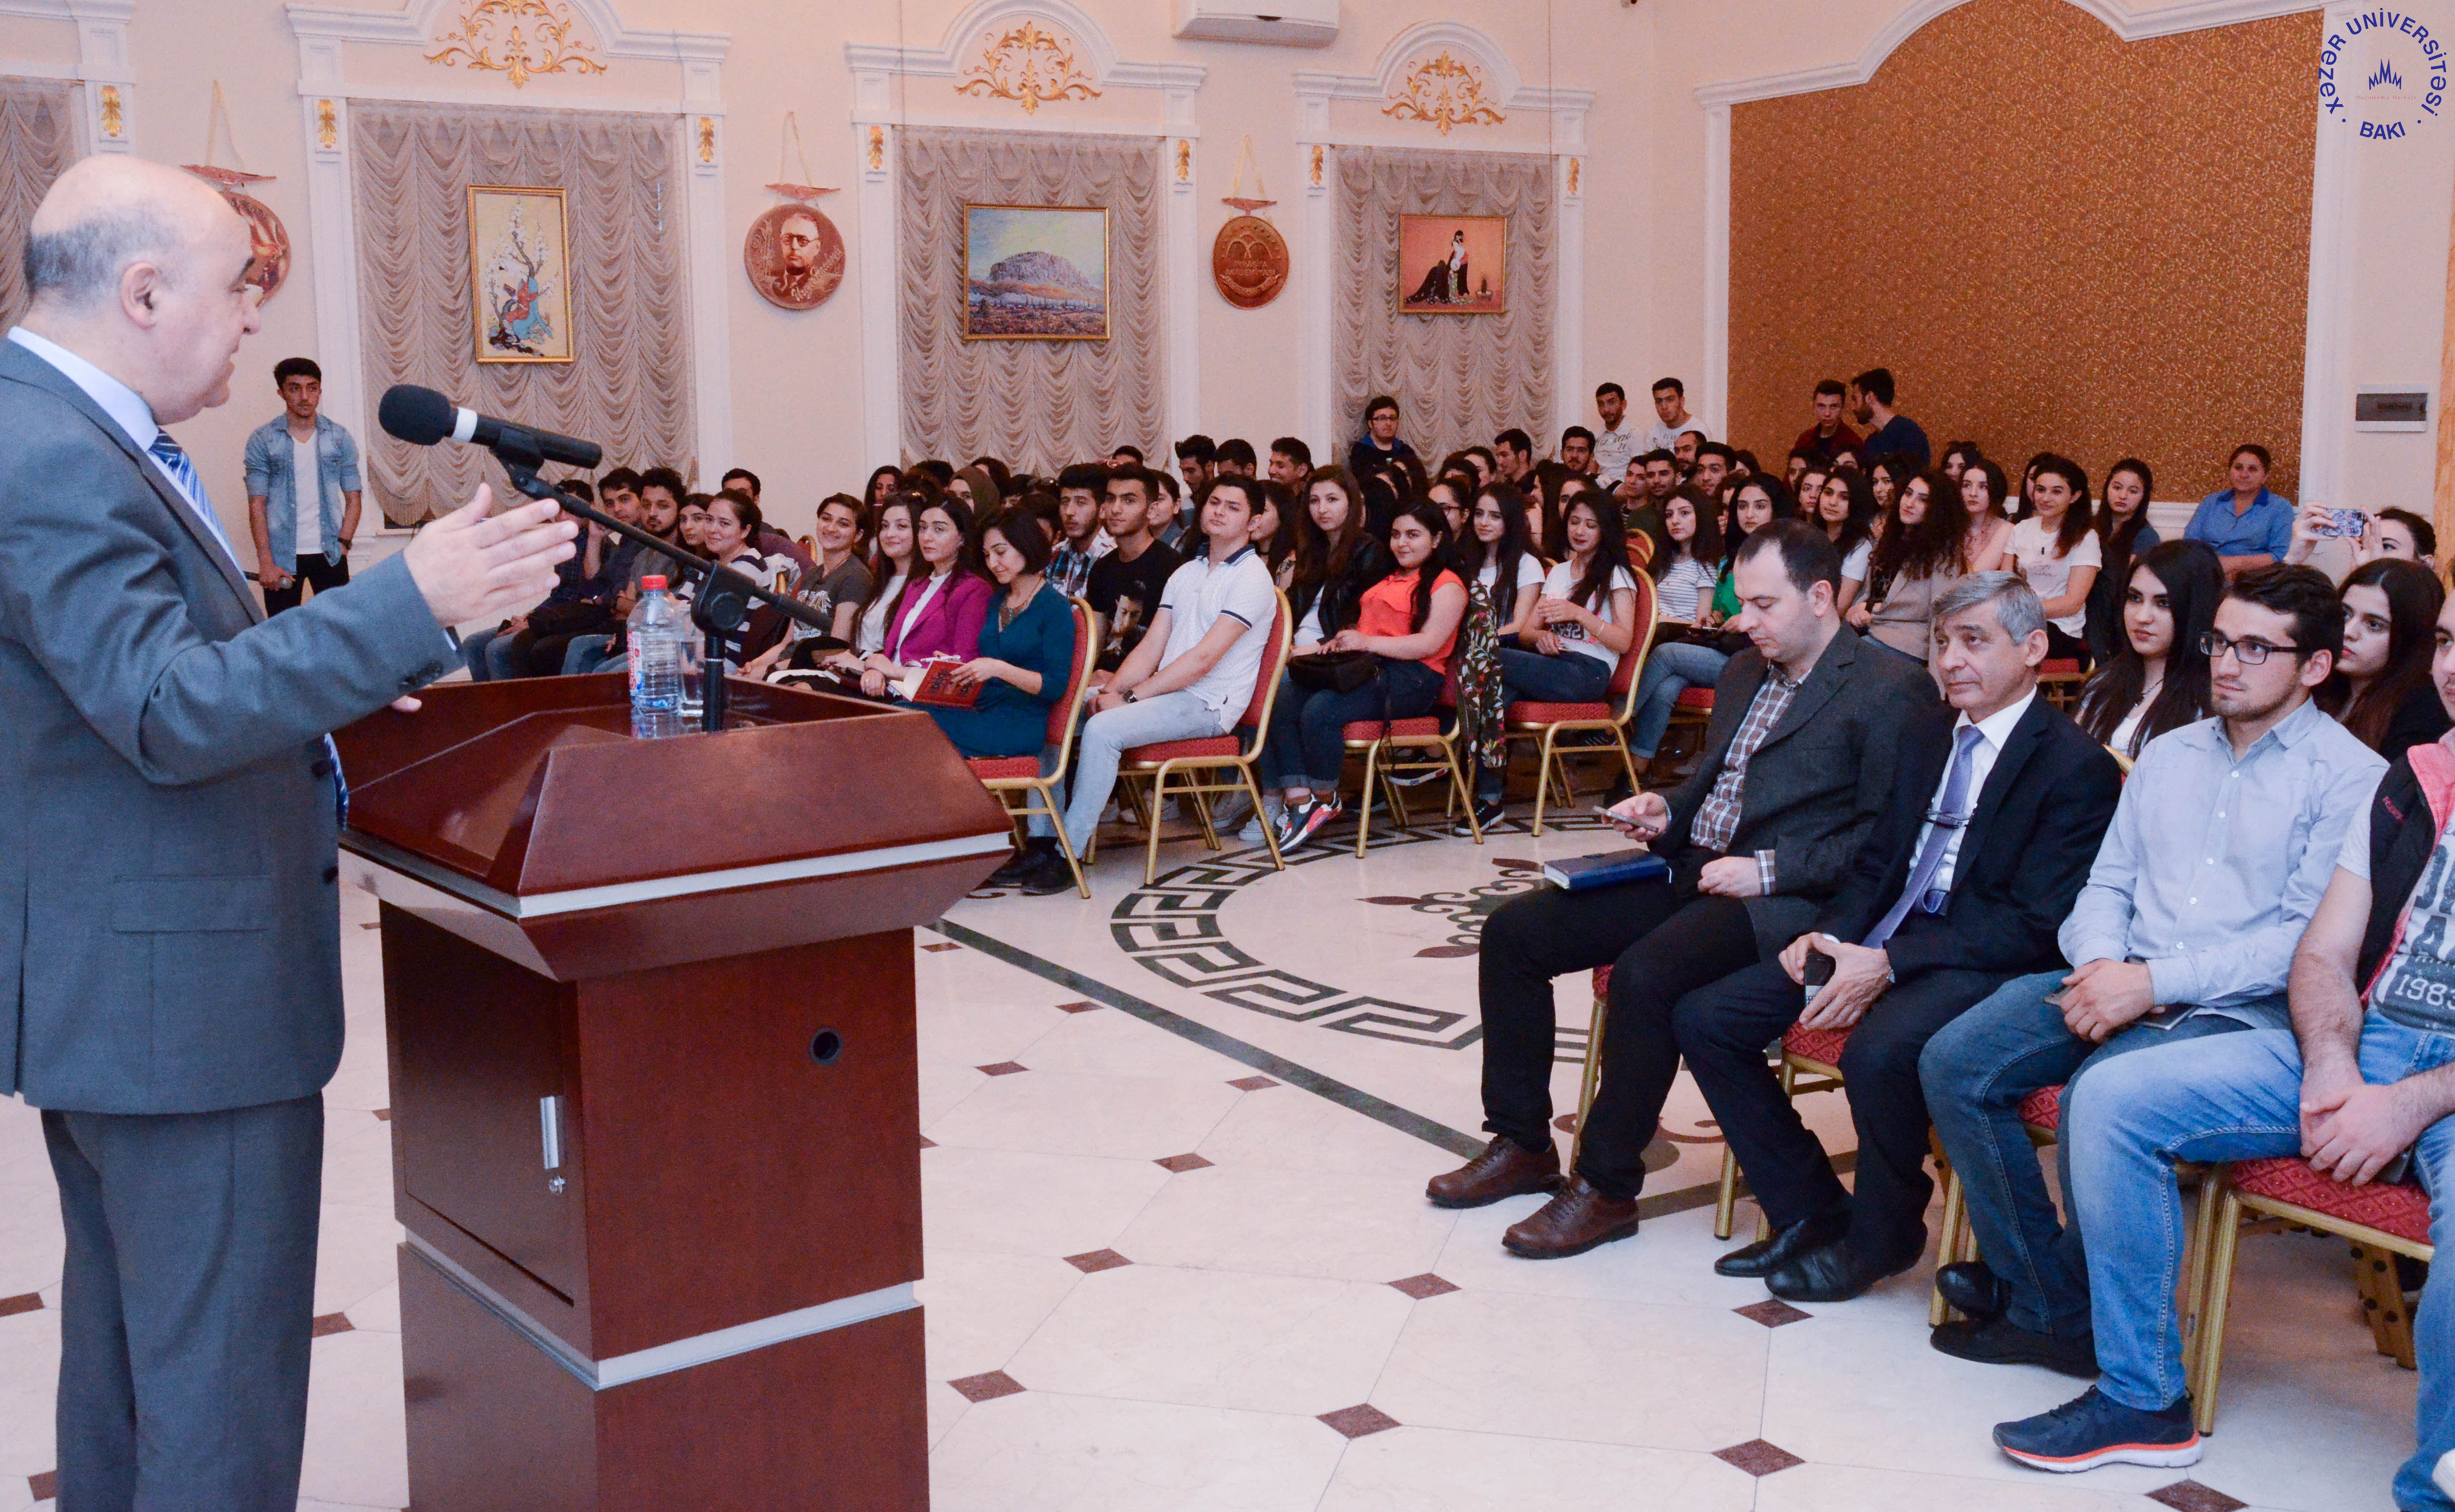 Chingiz Abdullayev met with students